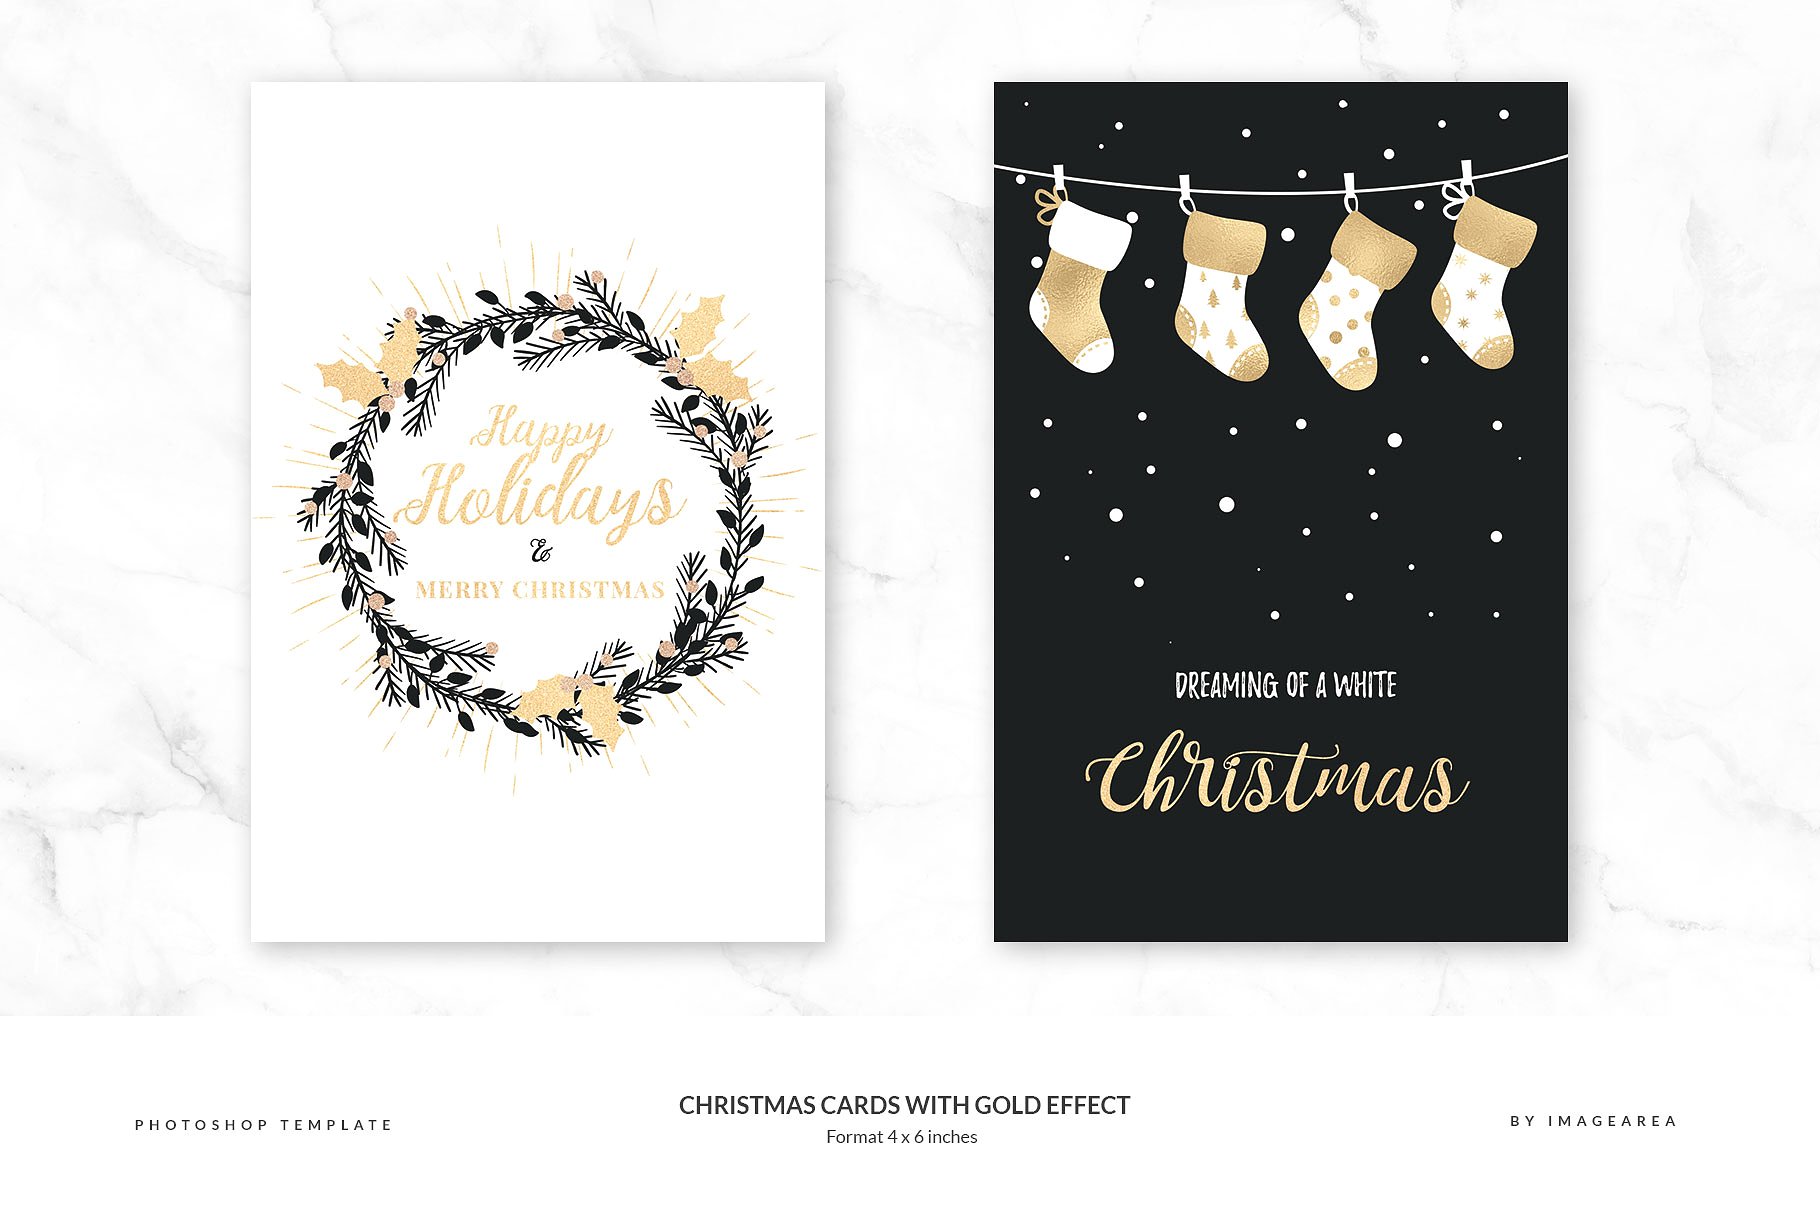 铂金镶嵌效果圣诞节贺卡模板 Christmas Cards with Gold Effect插图(1)